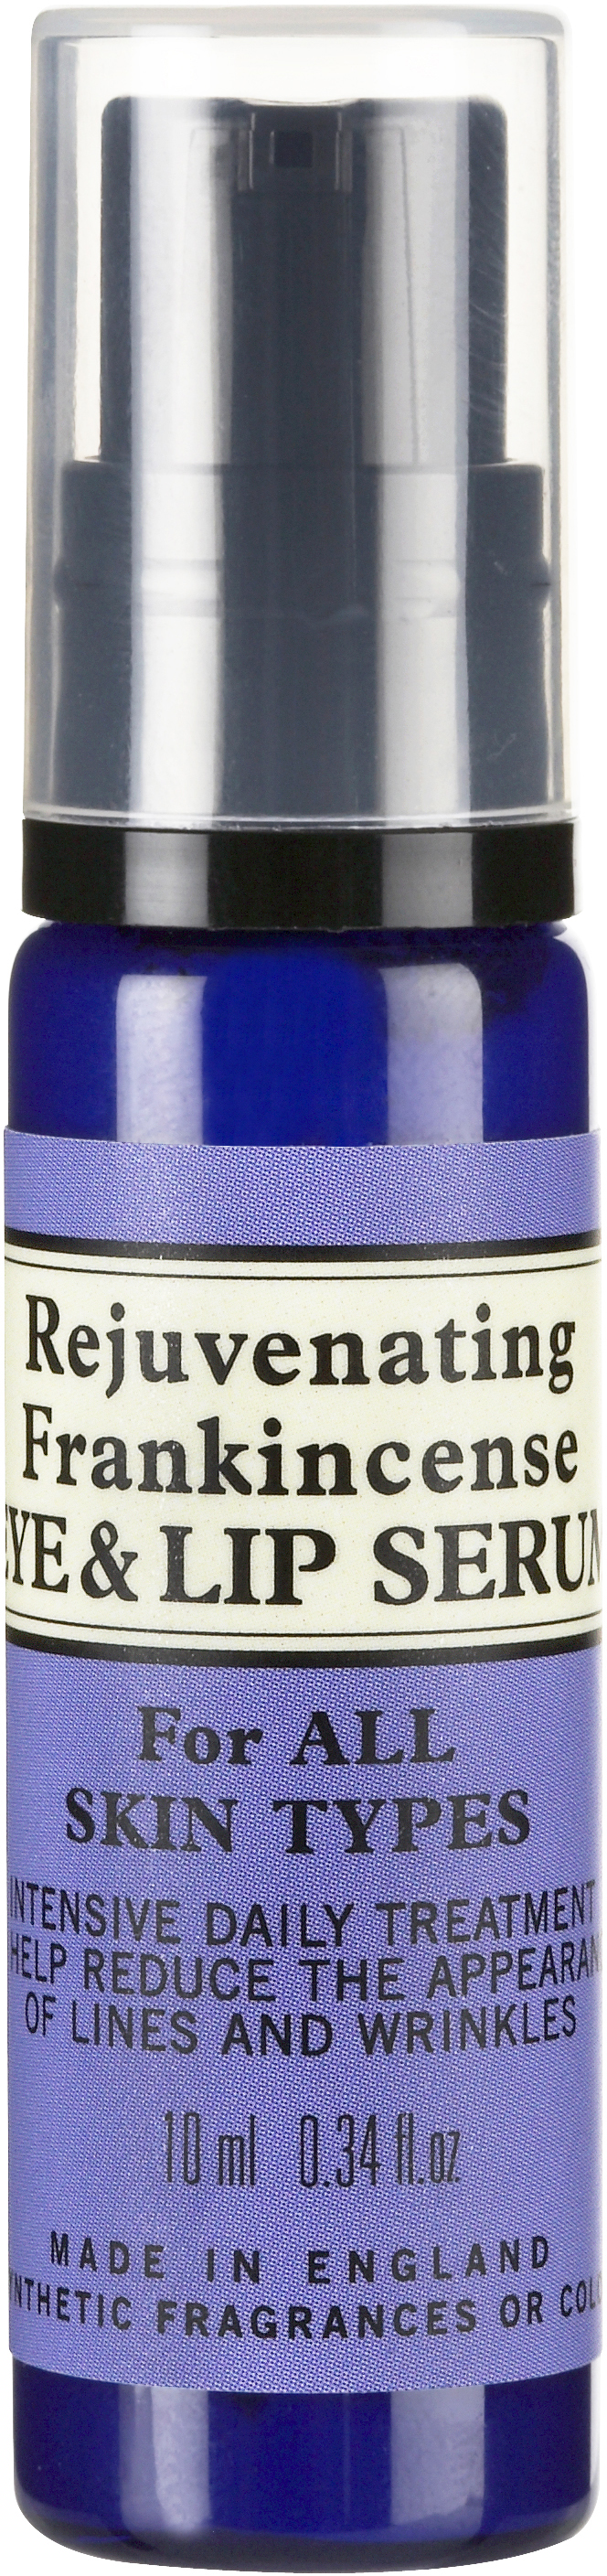 Neal’s Yard Remedies Rejuvenating Frankincense Eye & Lip Serum